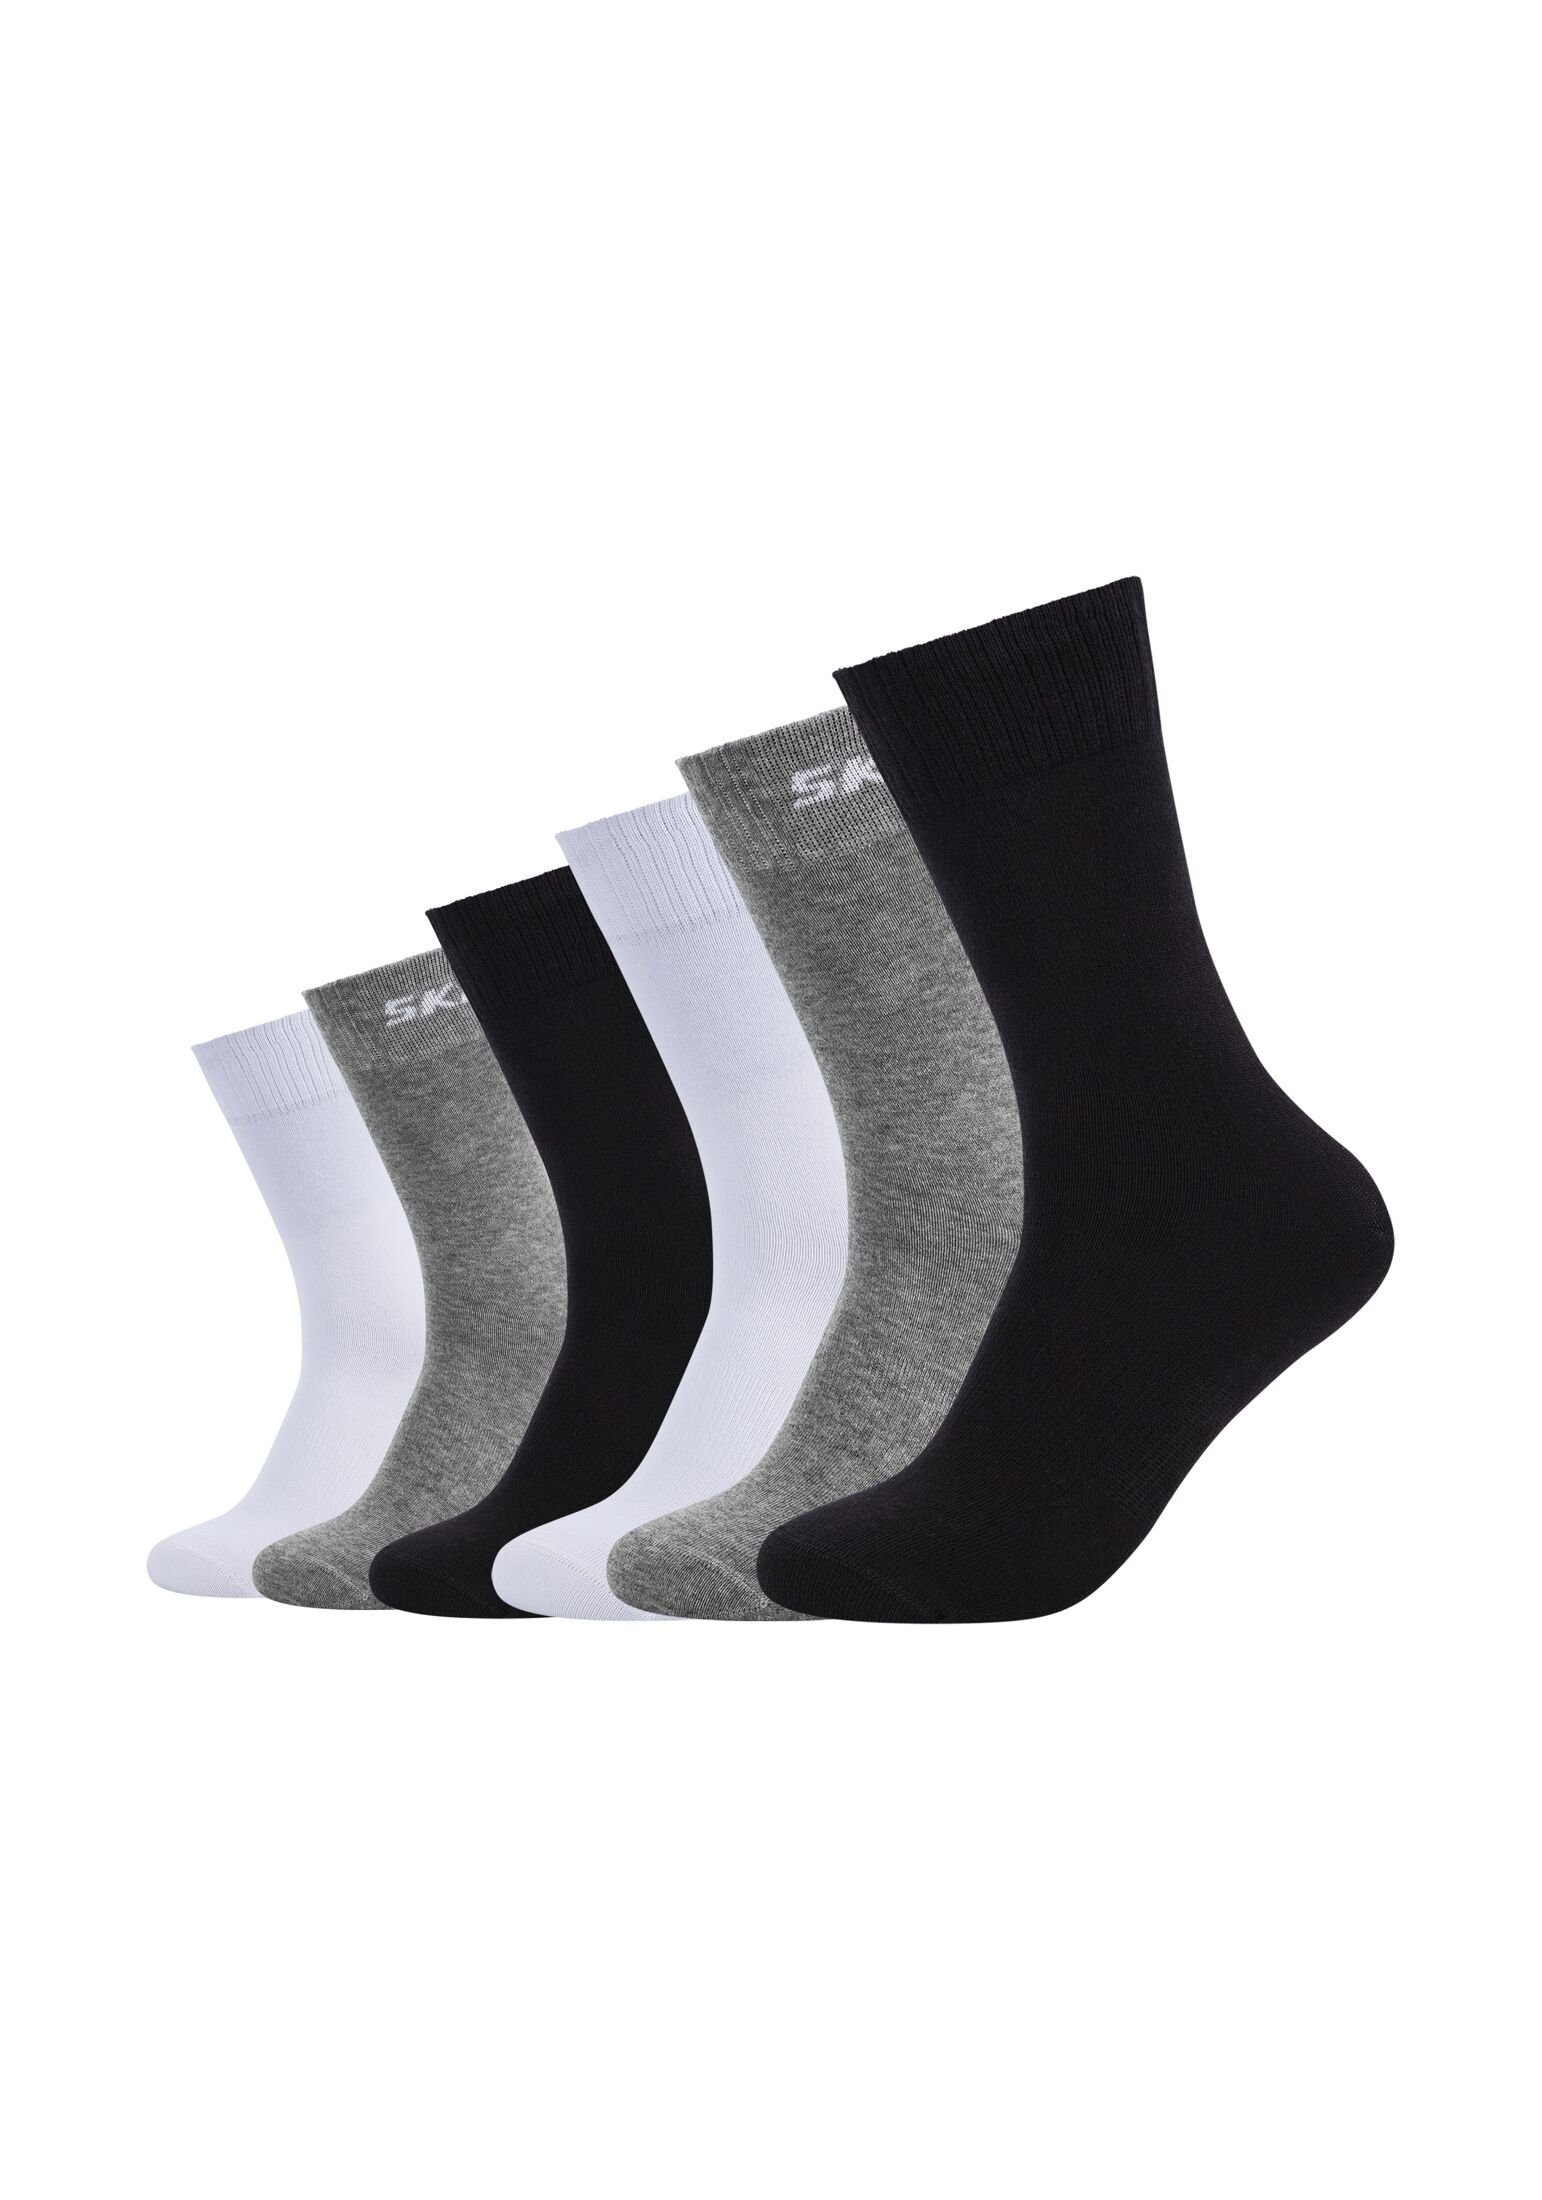 black/grey Pack mix Socken 6er Socken Skechers